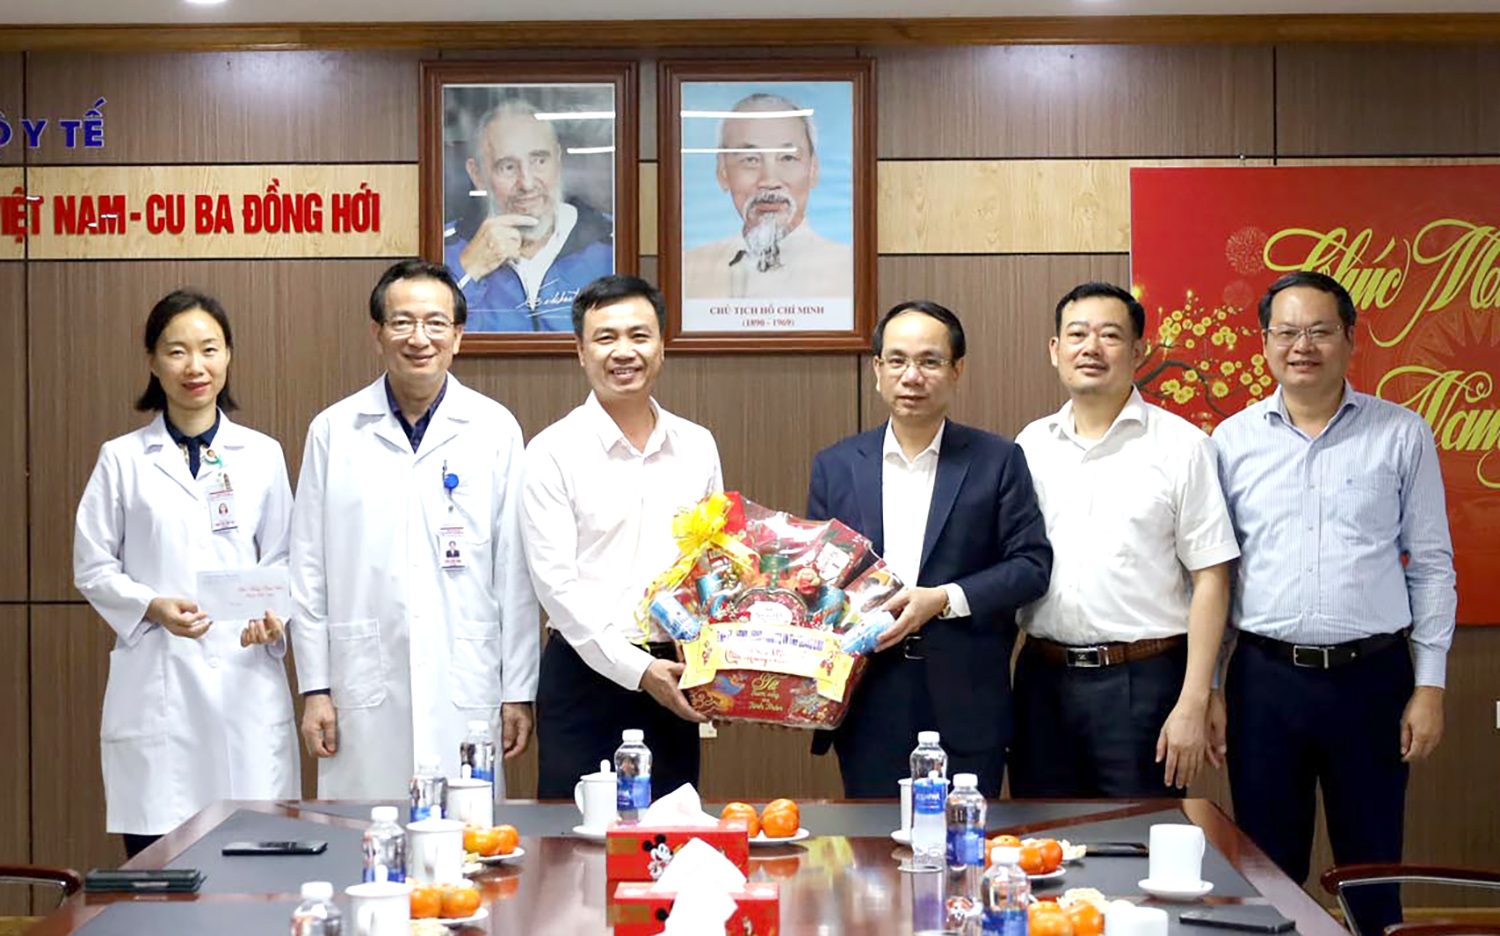 Đồng chí Phó Chủ tịch UBND tỉnh thăm, chúc Tết tại Bệnh viện hữu nghị Việt Nam-Cuba Đồng Hới